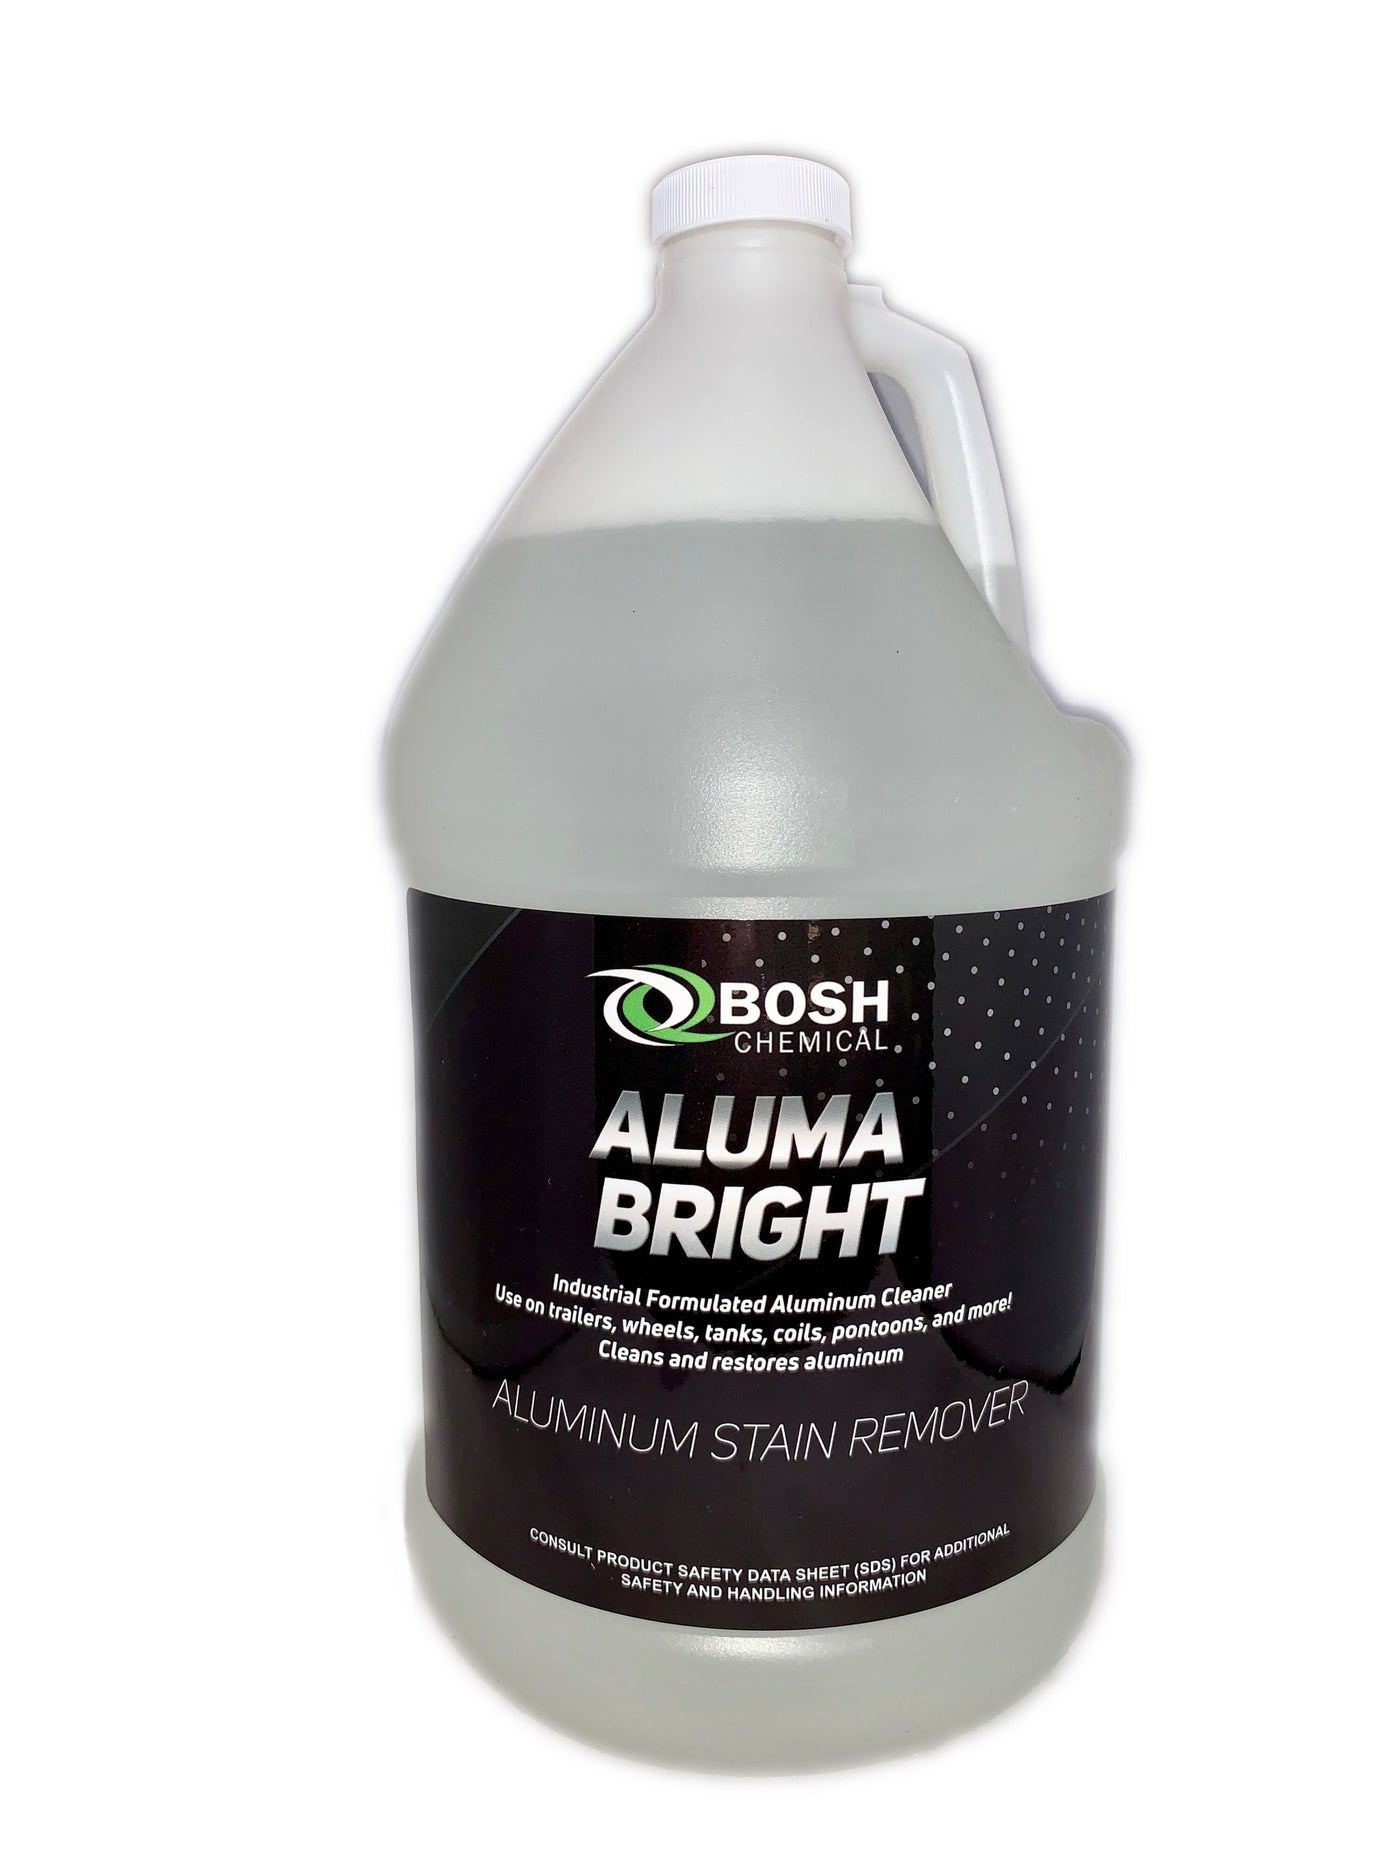 Aluma Bright, Aluminum Cleaner, Brightener